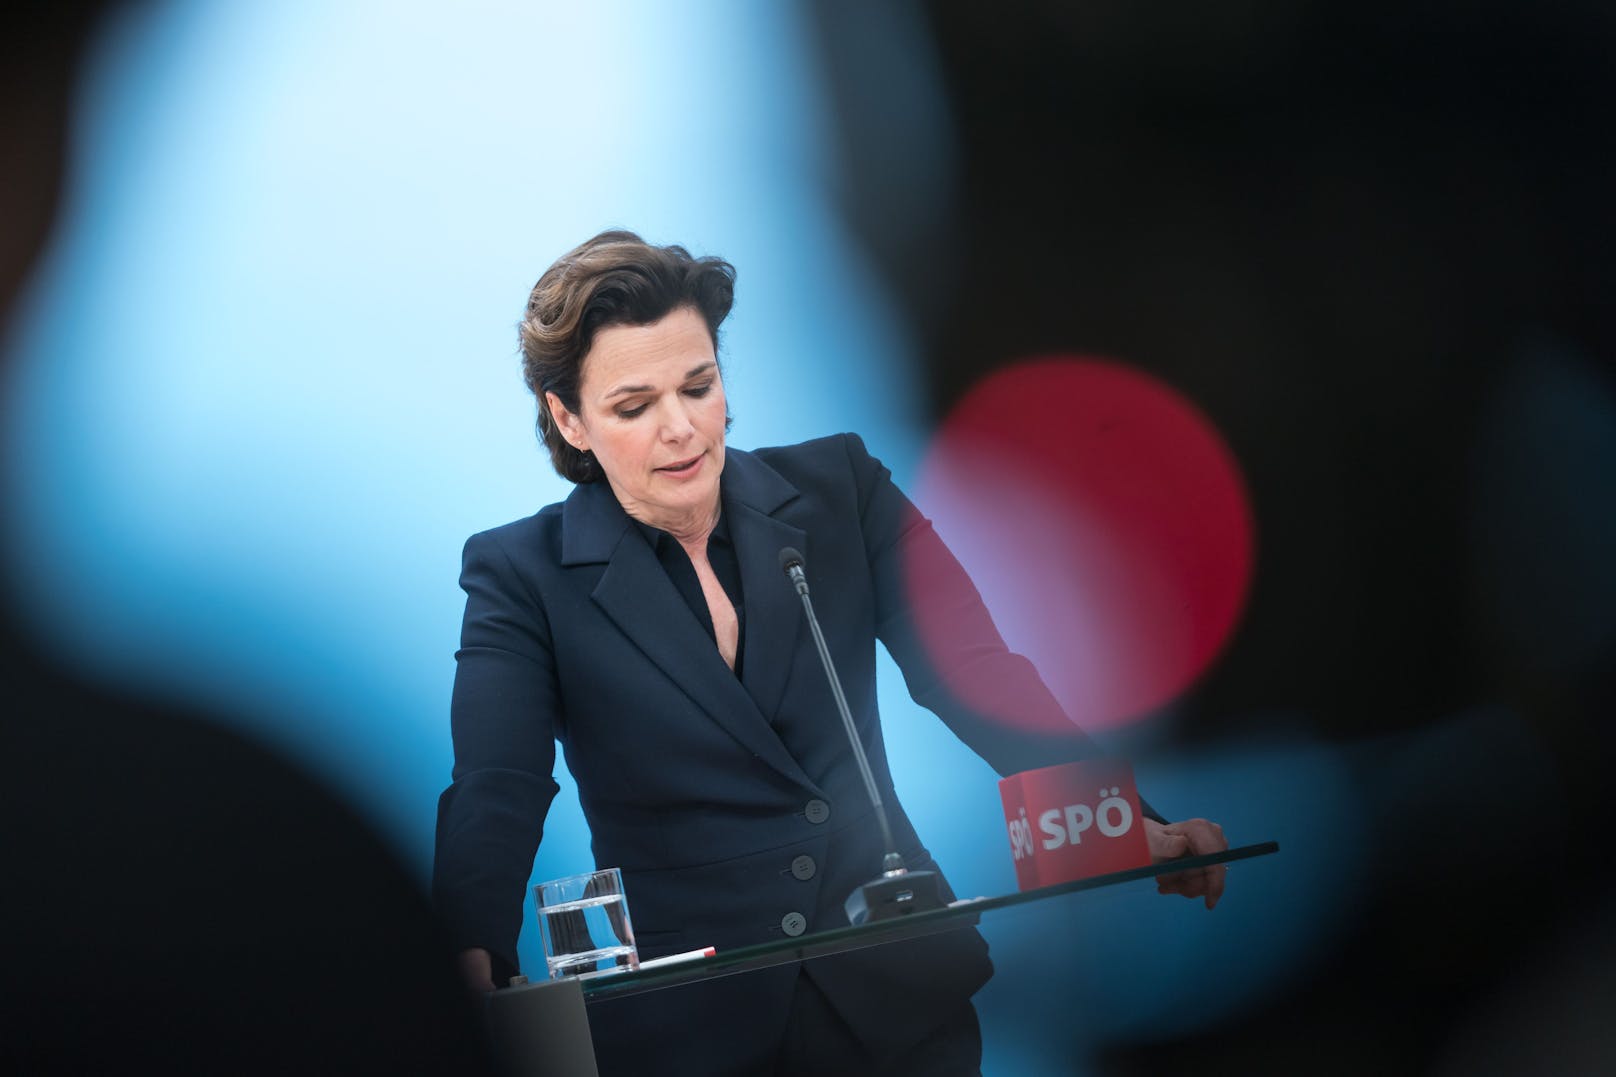 Nach der Niederlage bei der Mitgliederbefragung verkündete Rendi-Wagner am 23. Mai im Rahmen einer "persönlichen Erklärung" ihren Rückzug als SPÖ-Chefin.